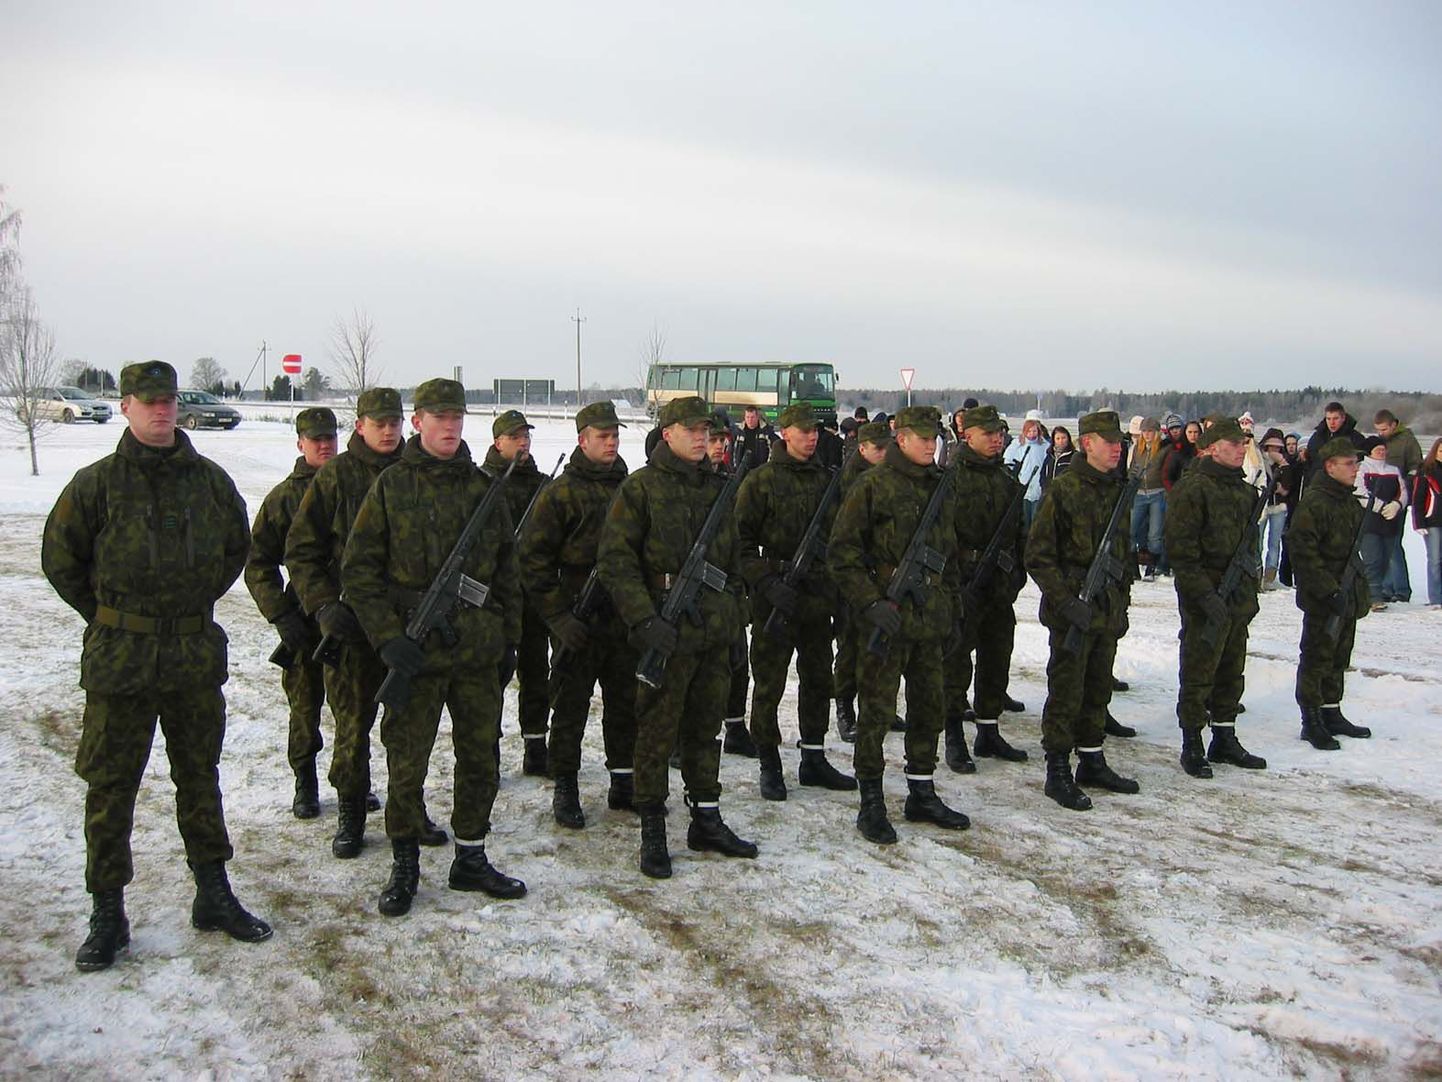 Üheksakümnendale aastapäevale pühendatud näidislahing toob 31. jaanuaril Paju mõisa juurde pea pool tuhat Kuperjanovi jalaväepataljoni sõdurit. Plaani kohaselt saabutakse sündmuskohale sama päeva hommikul.